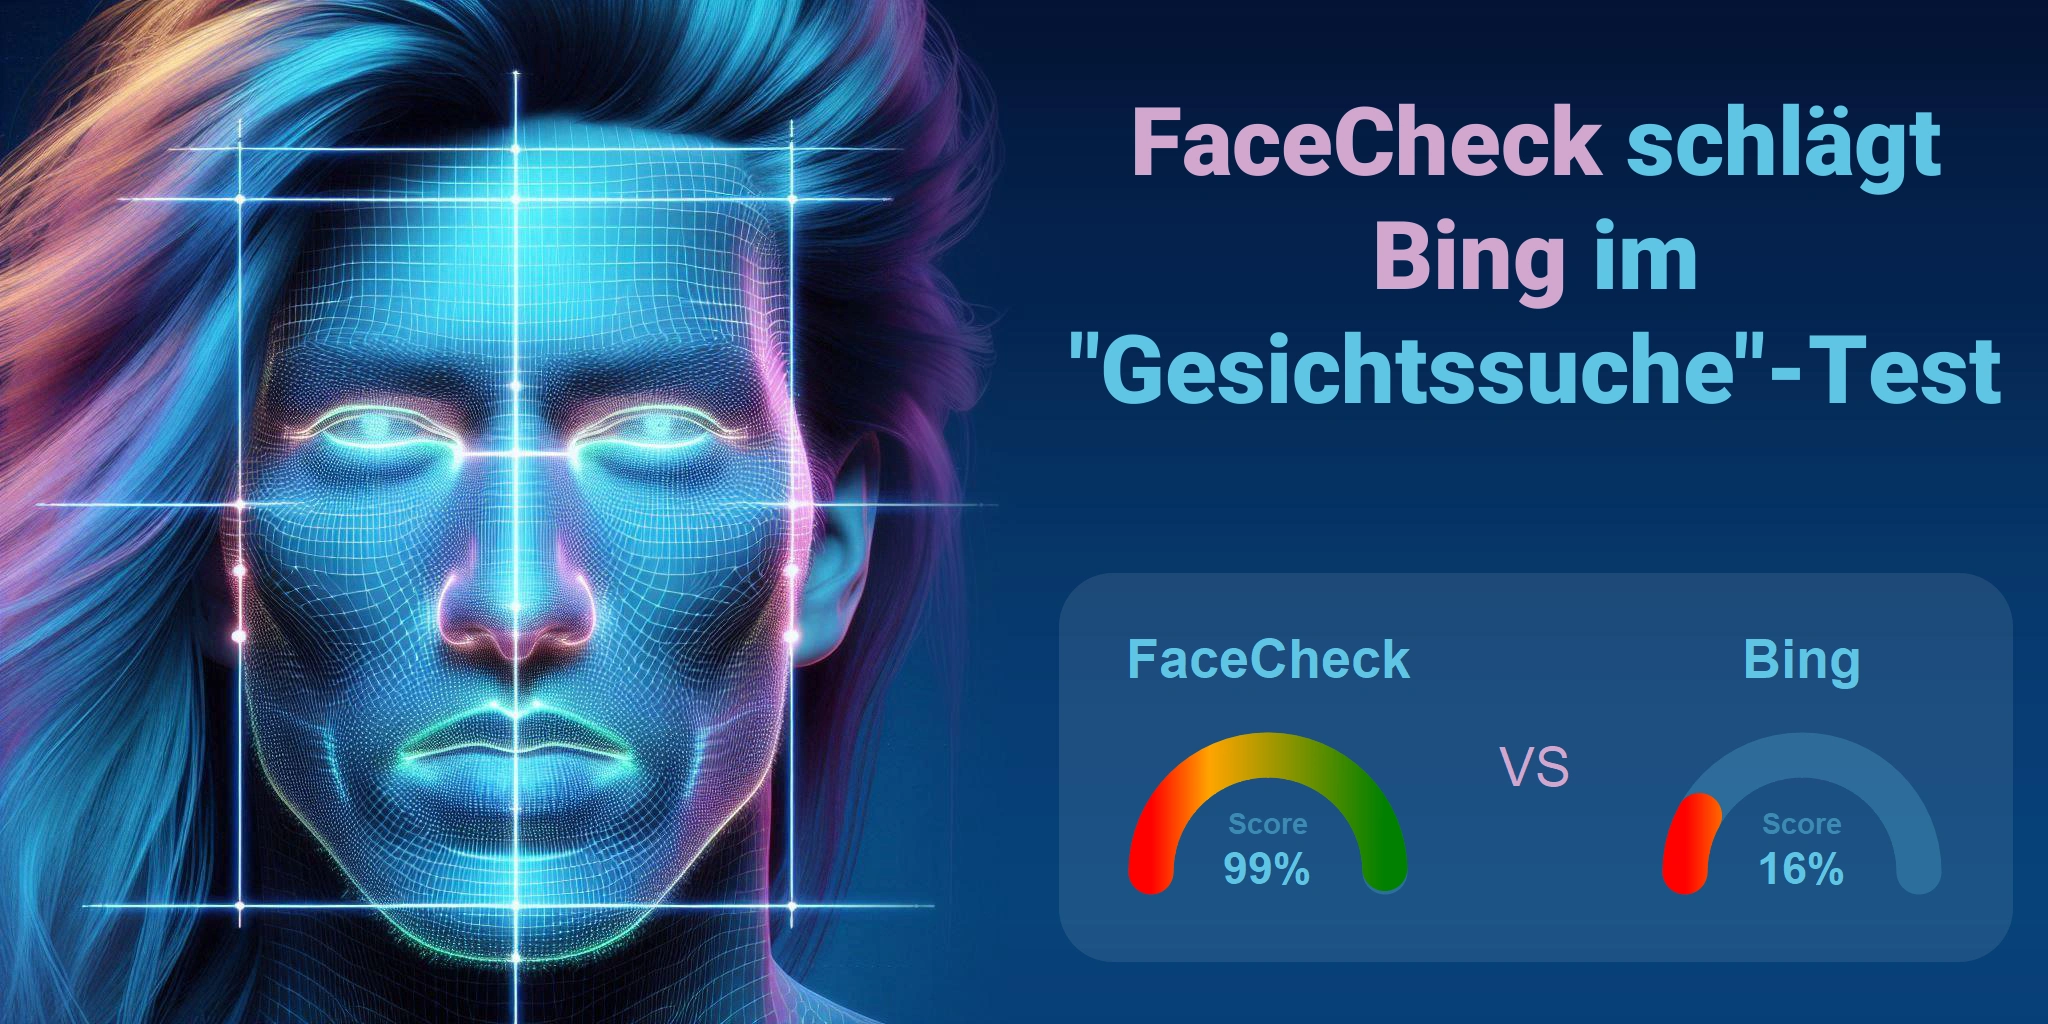 Welcher ist besser für die Gesichtssuche: <br>FaceCheck oder Bing?